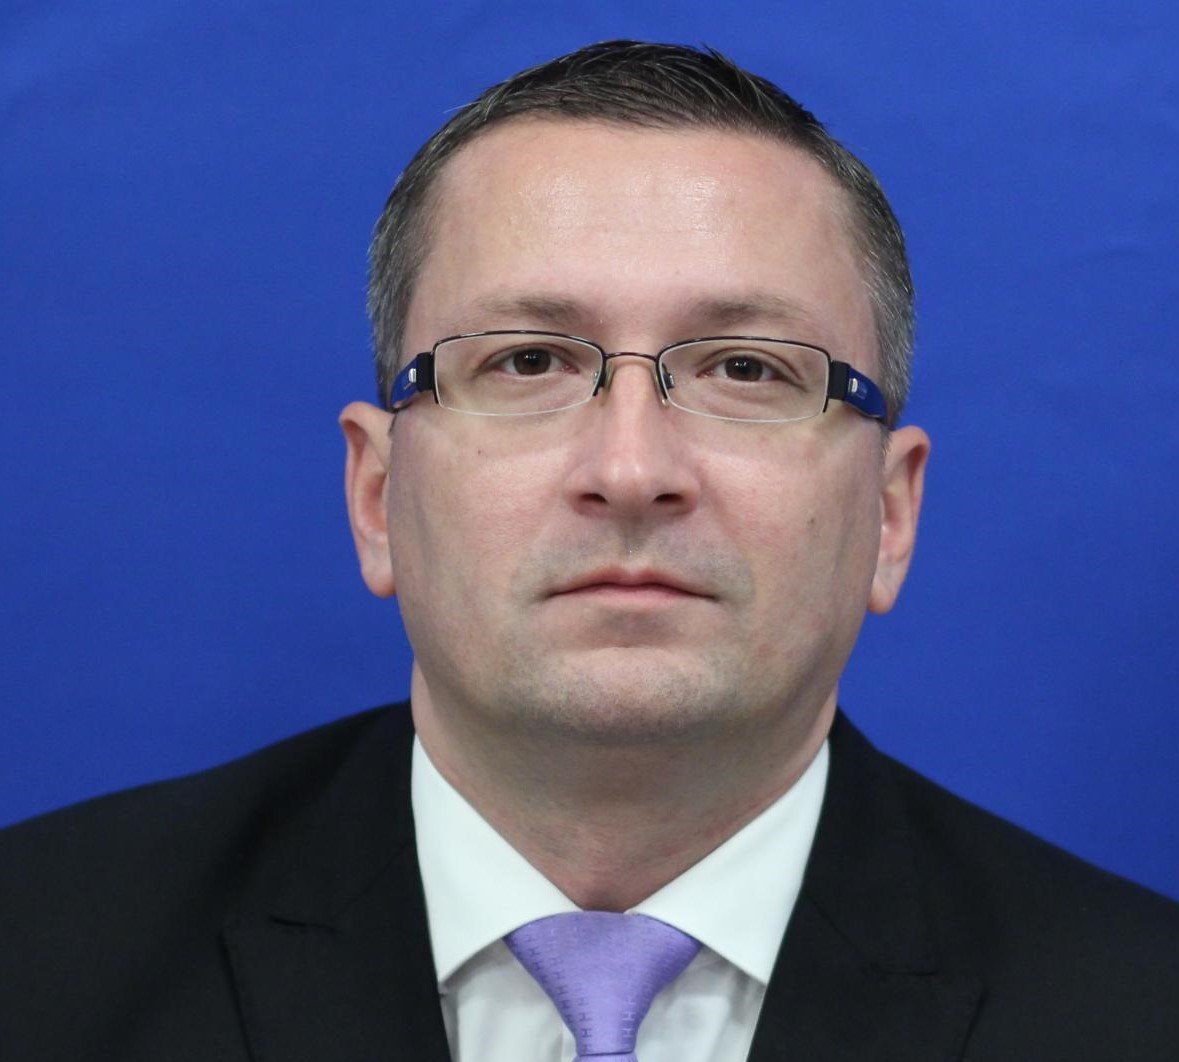 Deputatul Dragoş-Petruţ Bârlădeanu, apropiat al lui Marian Oprișan, părăsește grupul parlamentar PSD